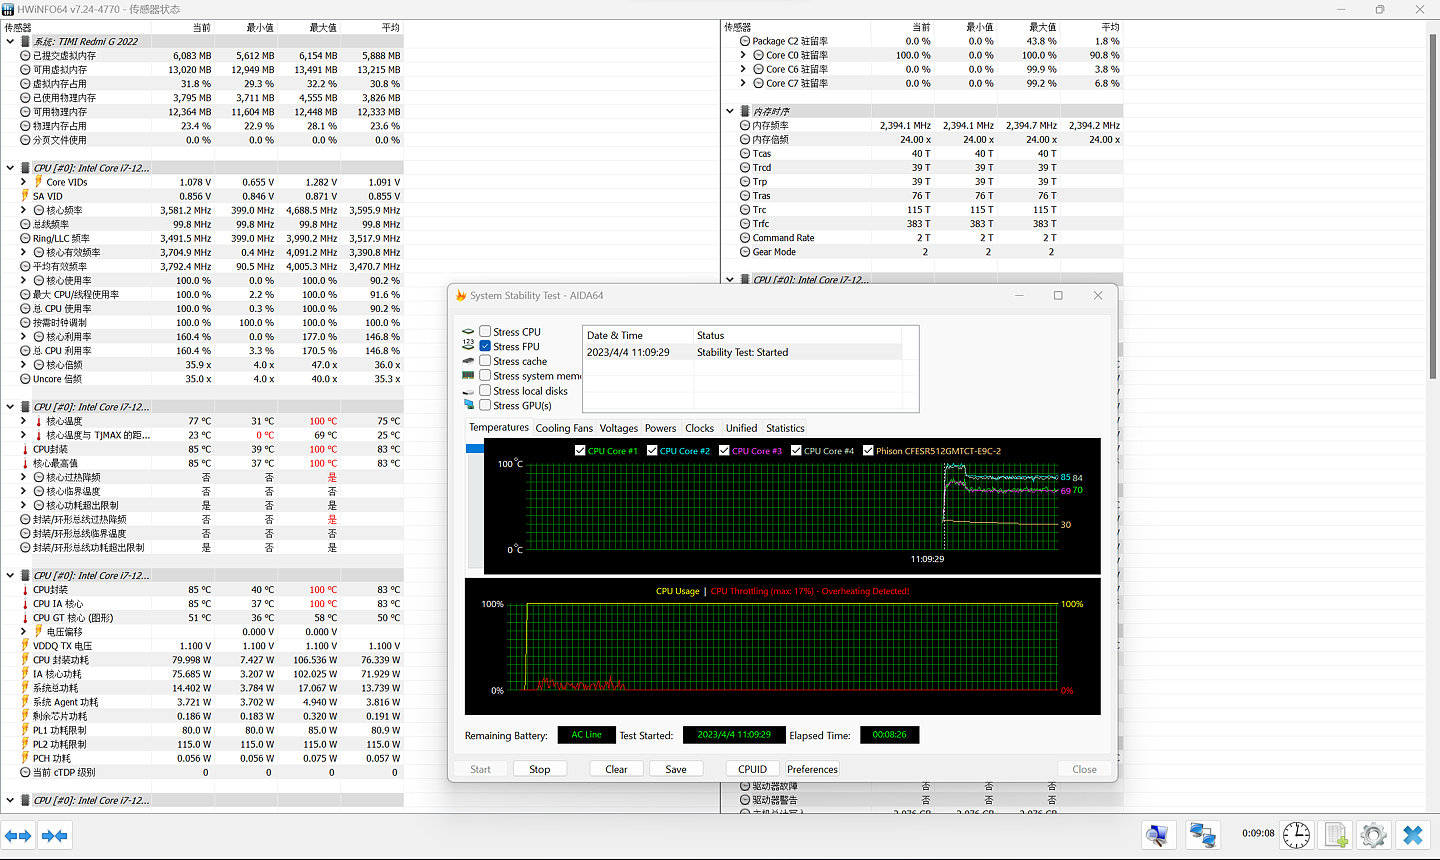 【IT之家评测室】Redmi G Pro 高性价比游戏本评测:i7-12650H+RTX 3060, 低价堆料量大管饱 - 17